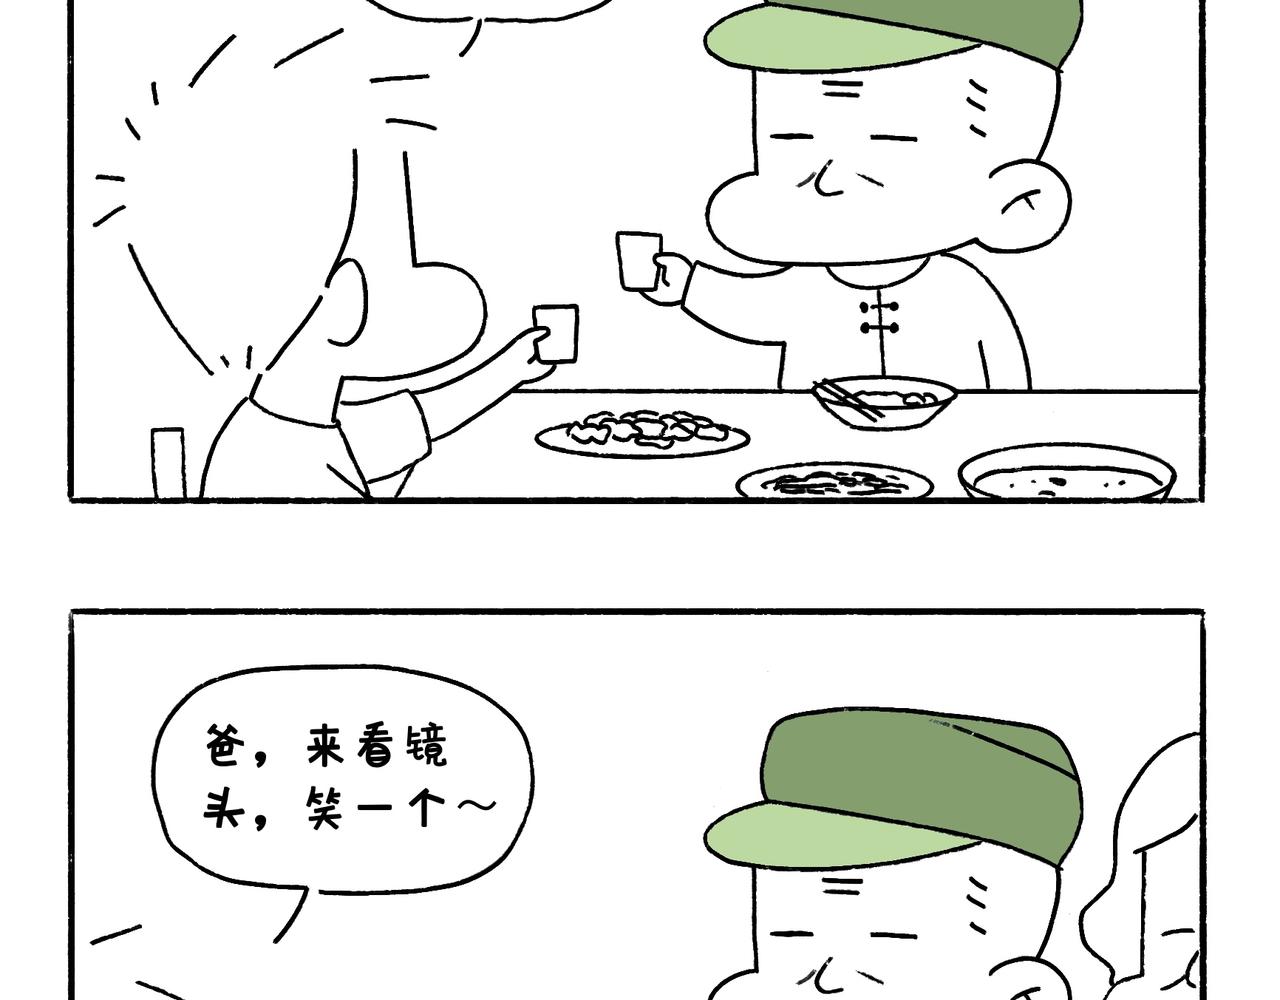 地呱炒土豆 - 爸爸與爺爺 - 2